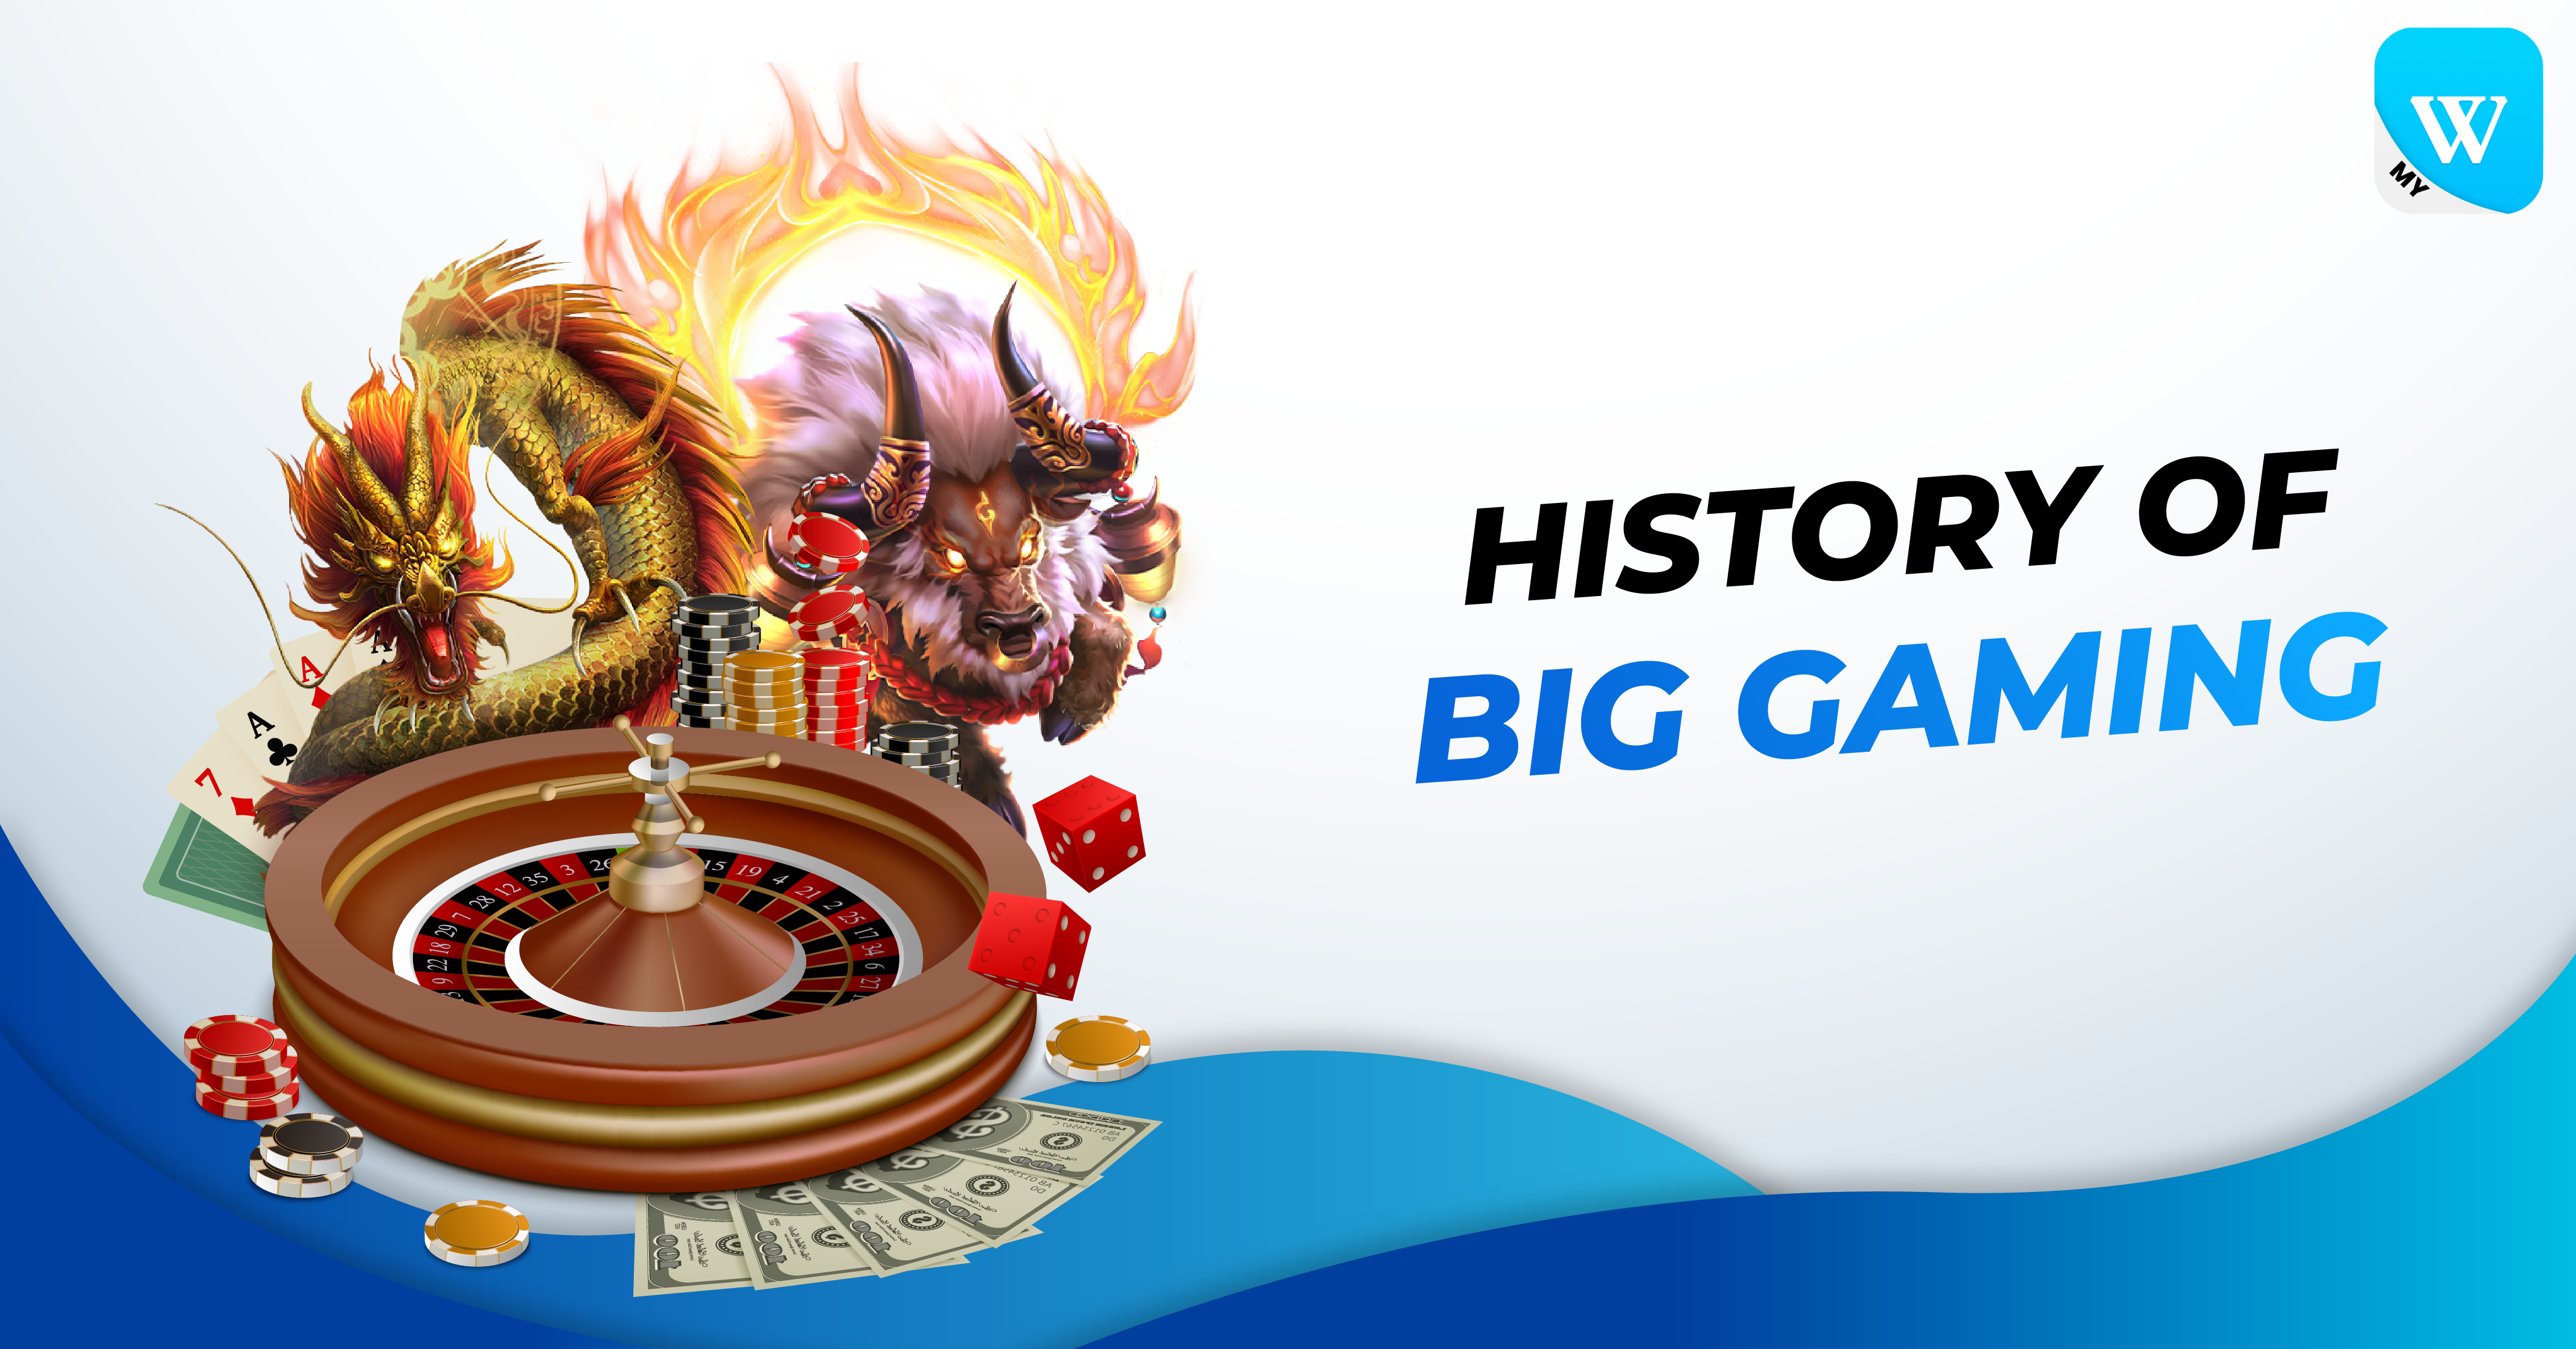 History of Big Gaming